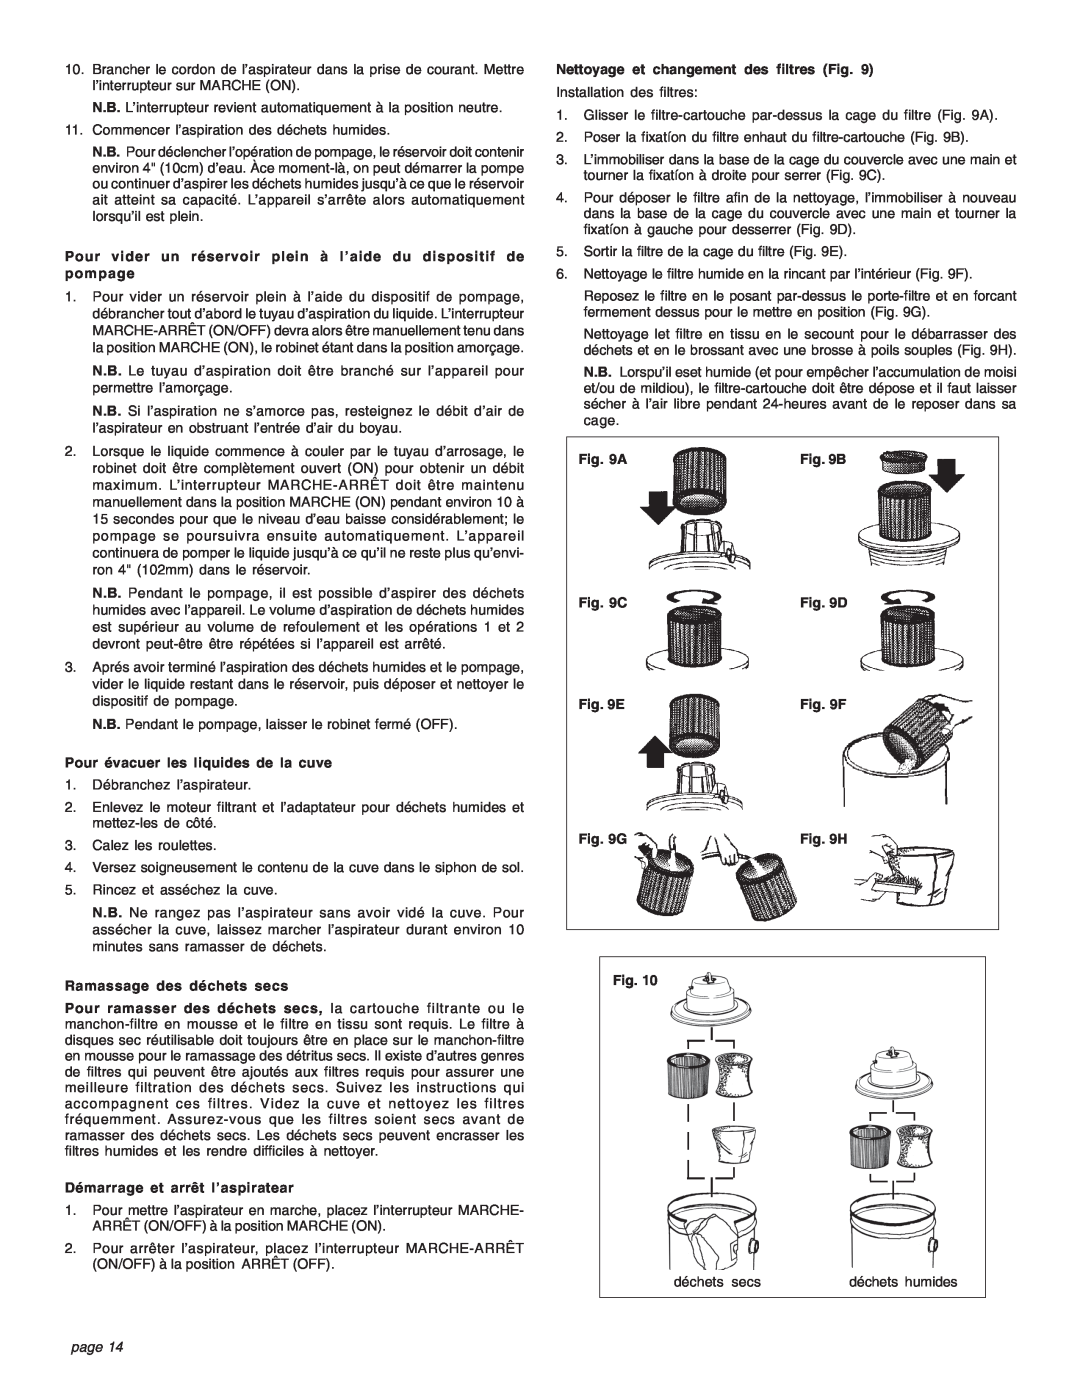 Intec 8940-20 manual Pour évacuer les liquides de la cuve, page 